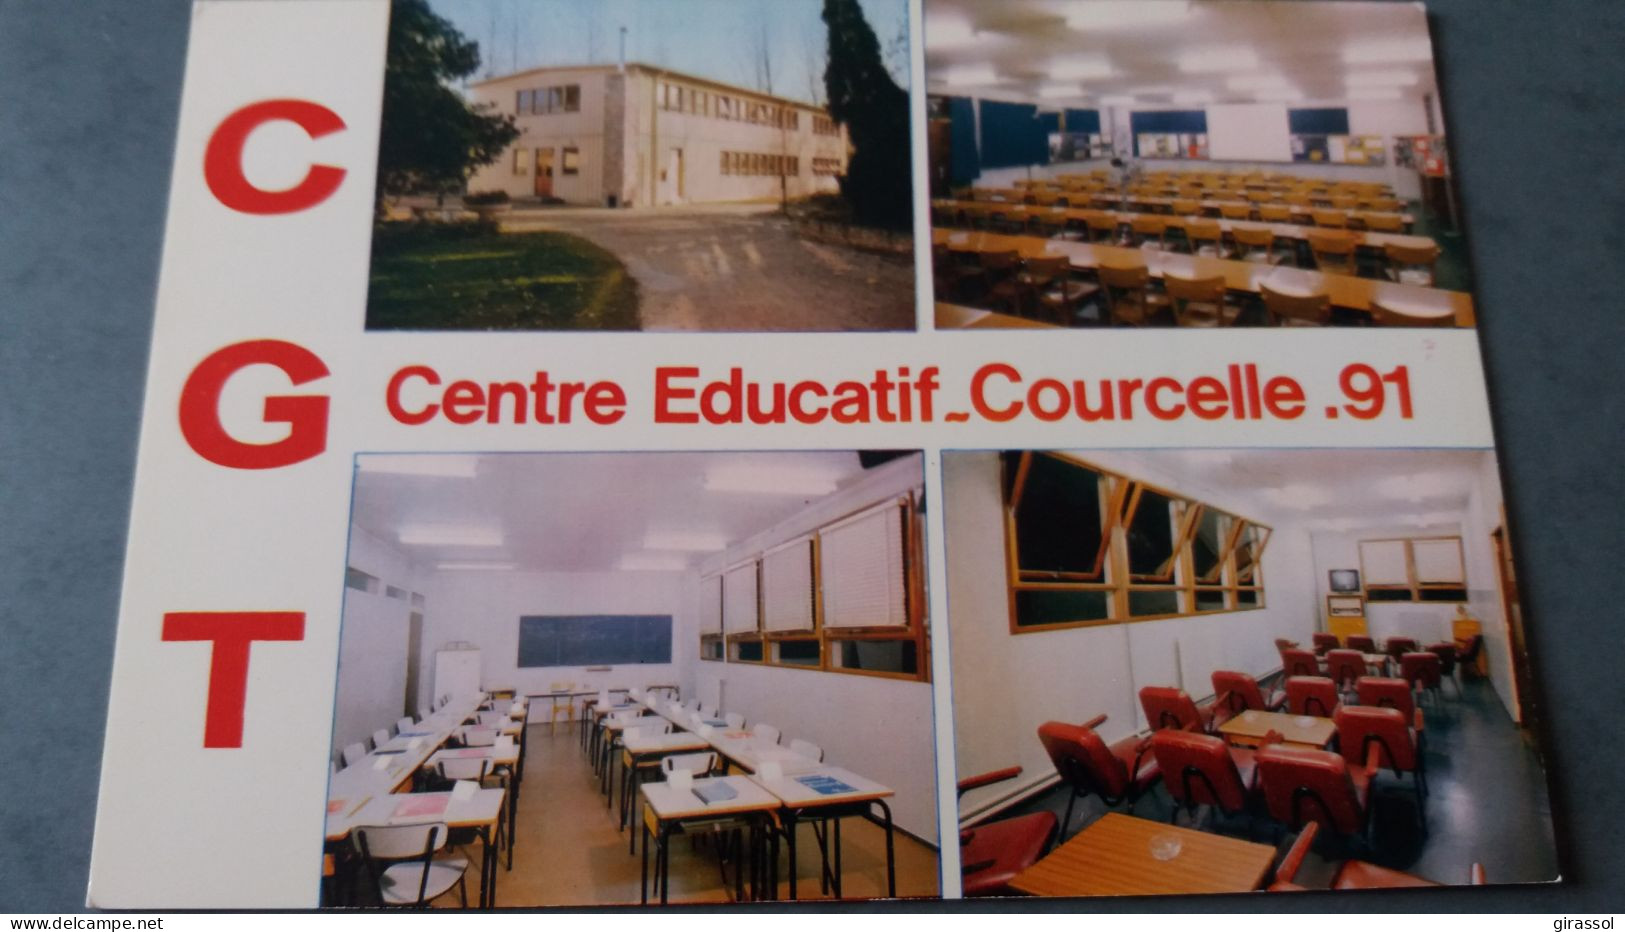 CPSM SYNDICAT C G T CENTRE EDUCATIF COURCELLE 91 ESSONNE INSTALLATIONS EDUCATIVES PHOTO BLONCOURT PORAS ED CI M - Syndicats